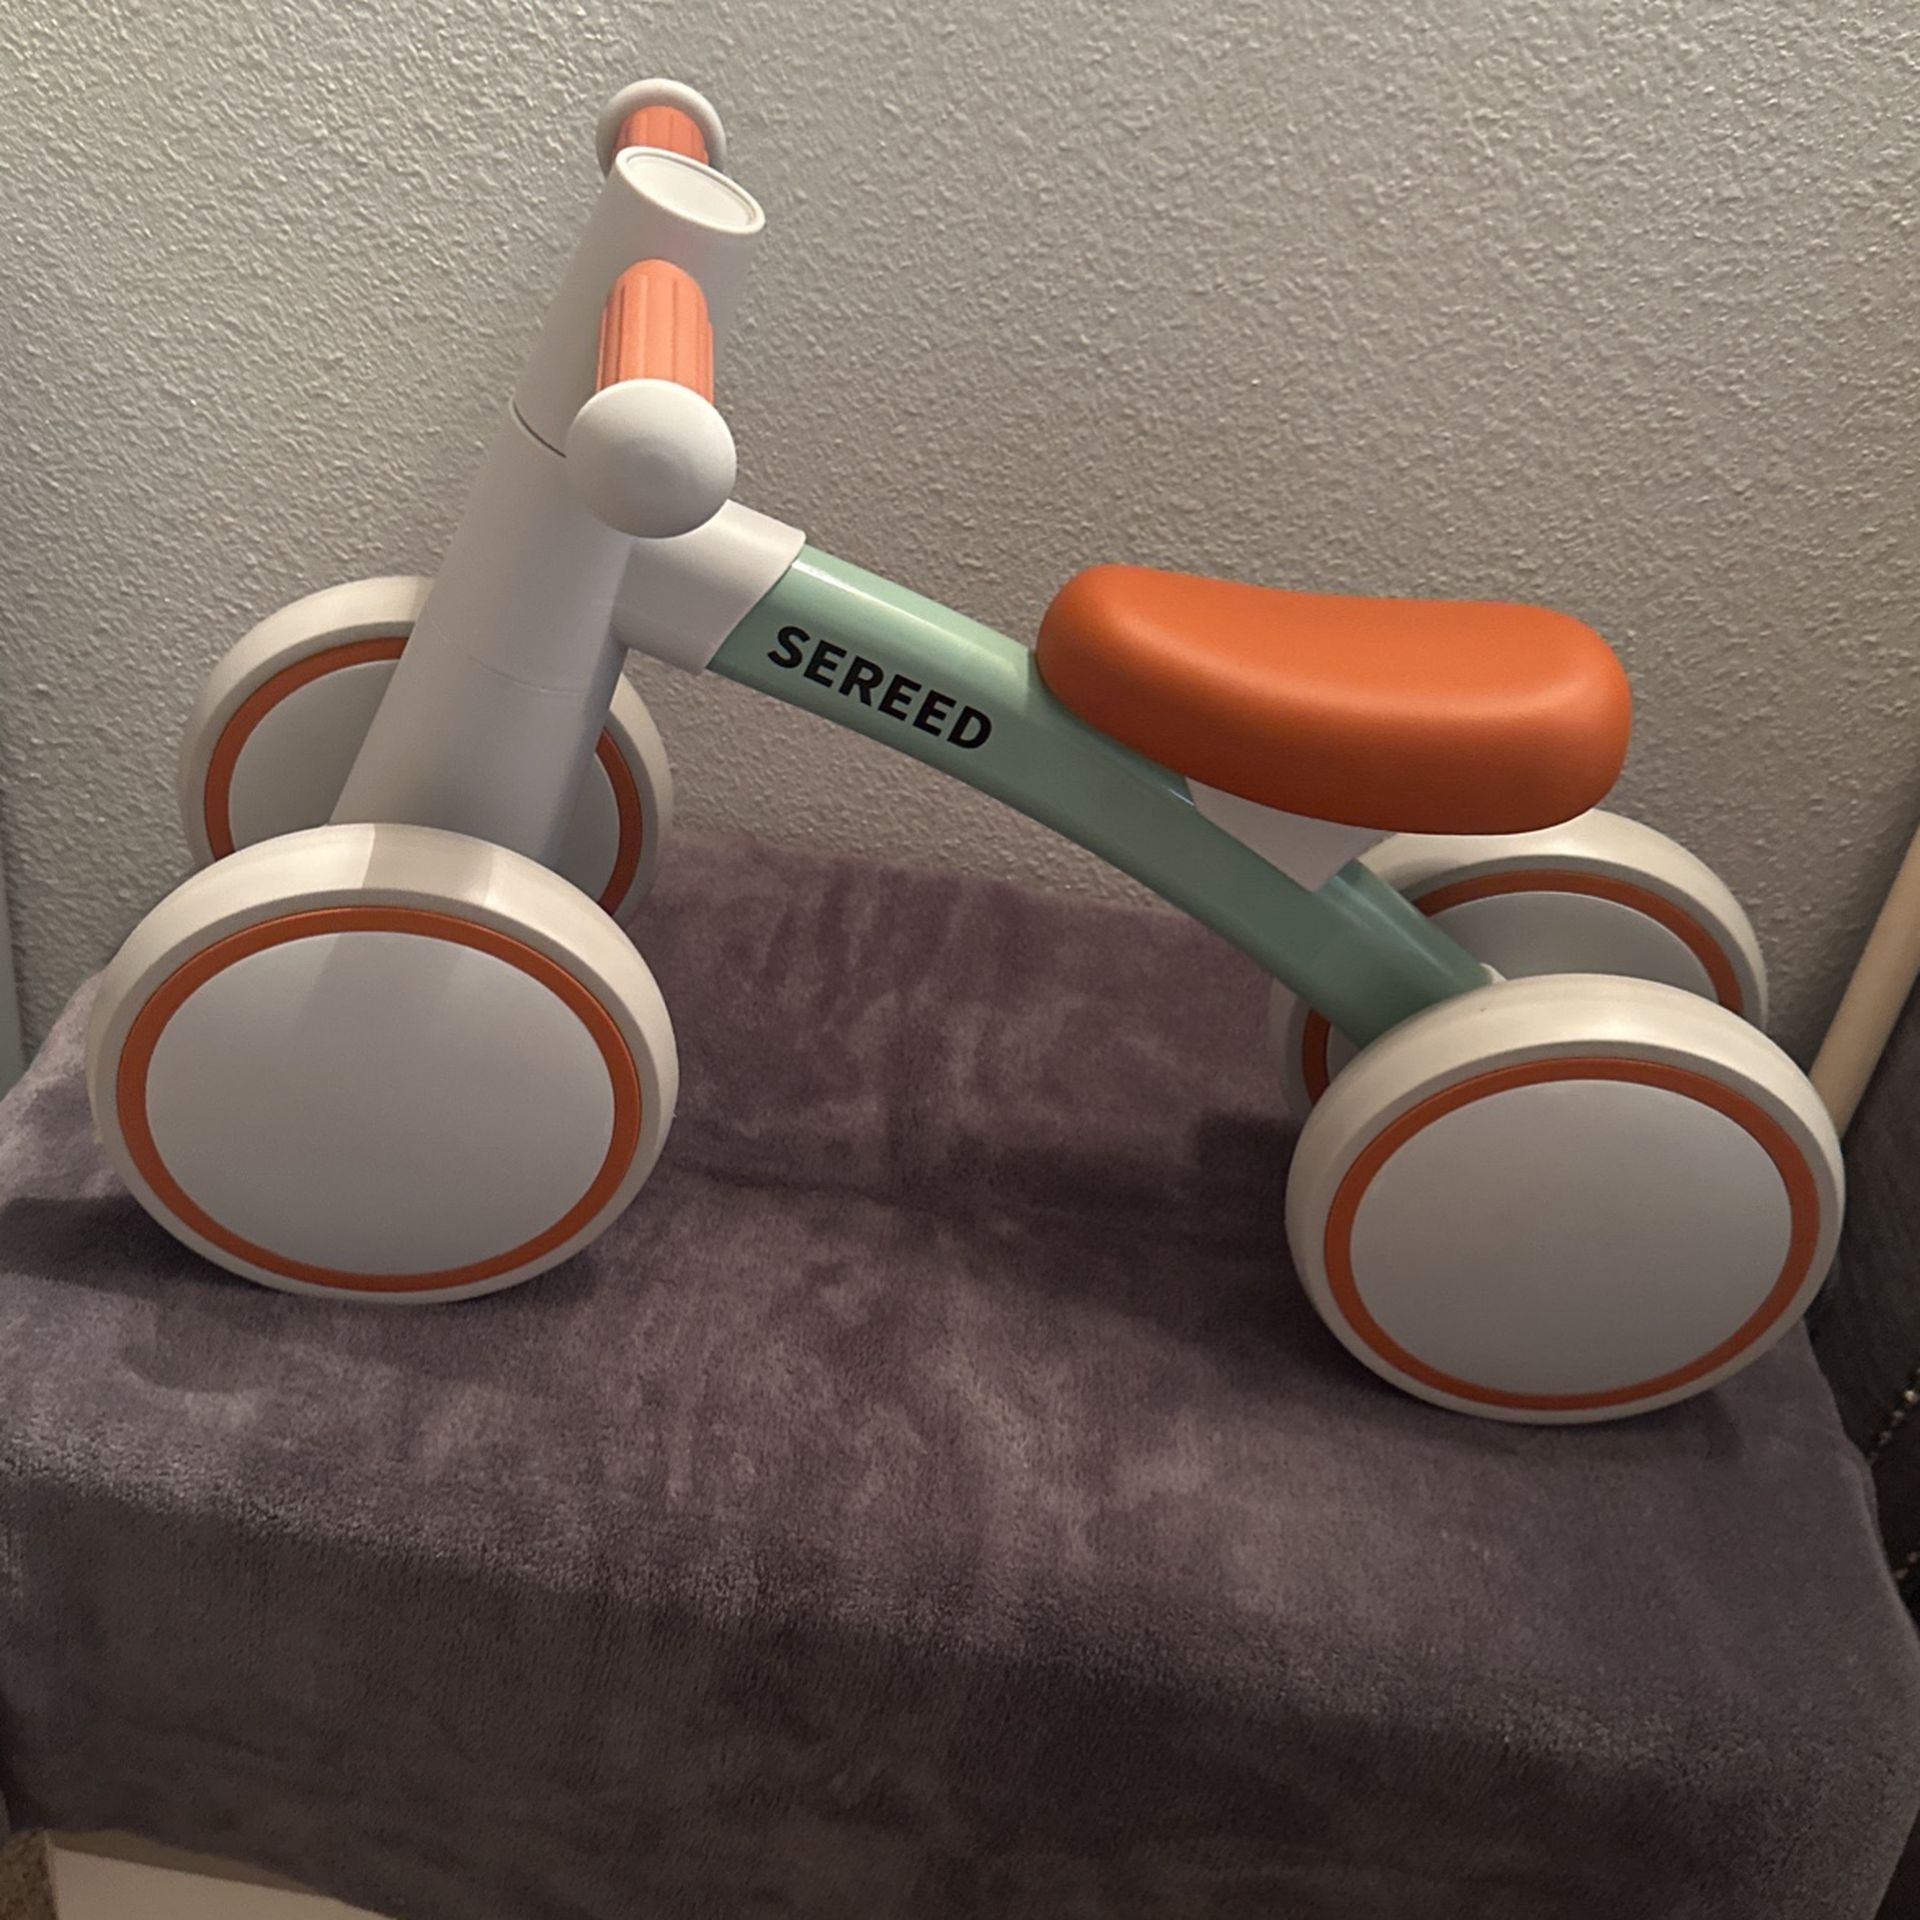 sereed toddler bike